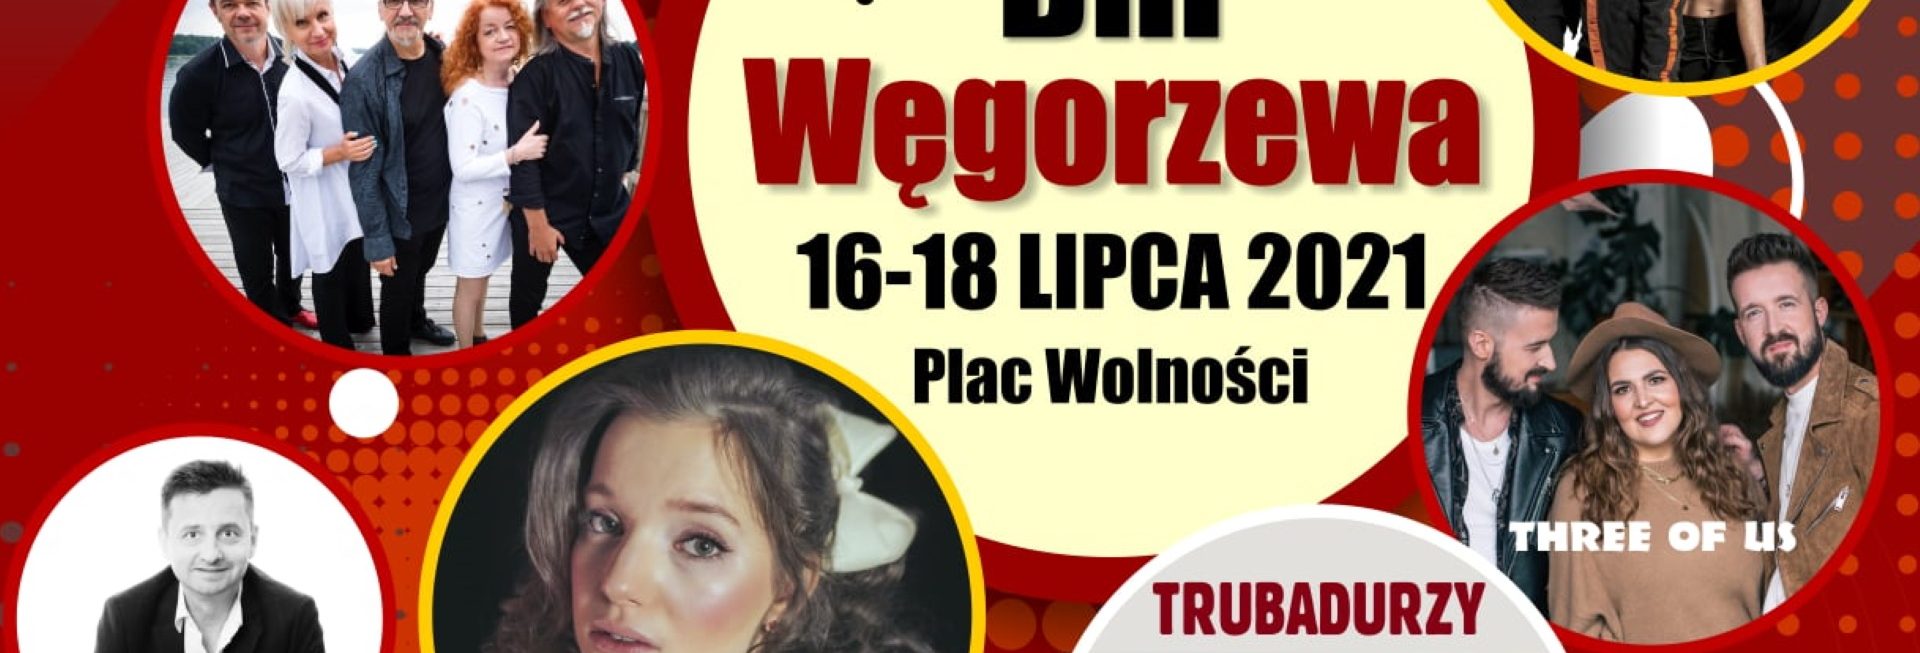 Plakat graficzny zapraszający do Węgorzewa na kolejną edycję imprezy Dni Węgorzewa 2021. Na plakacie zdjęcia artystów występujących podczas imprezy w Węgorzewie.